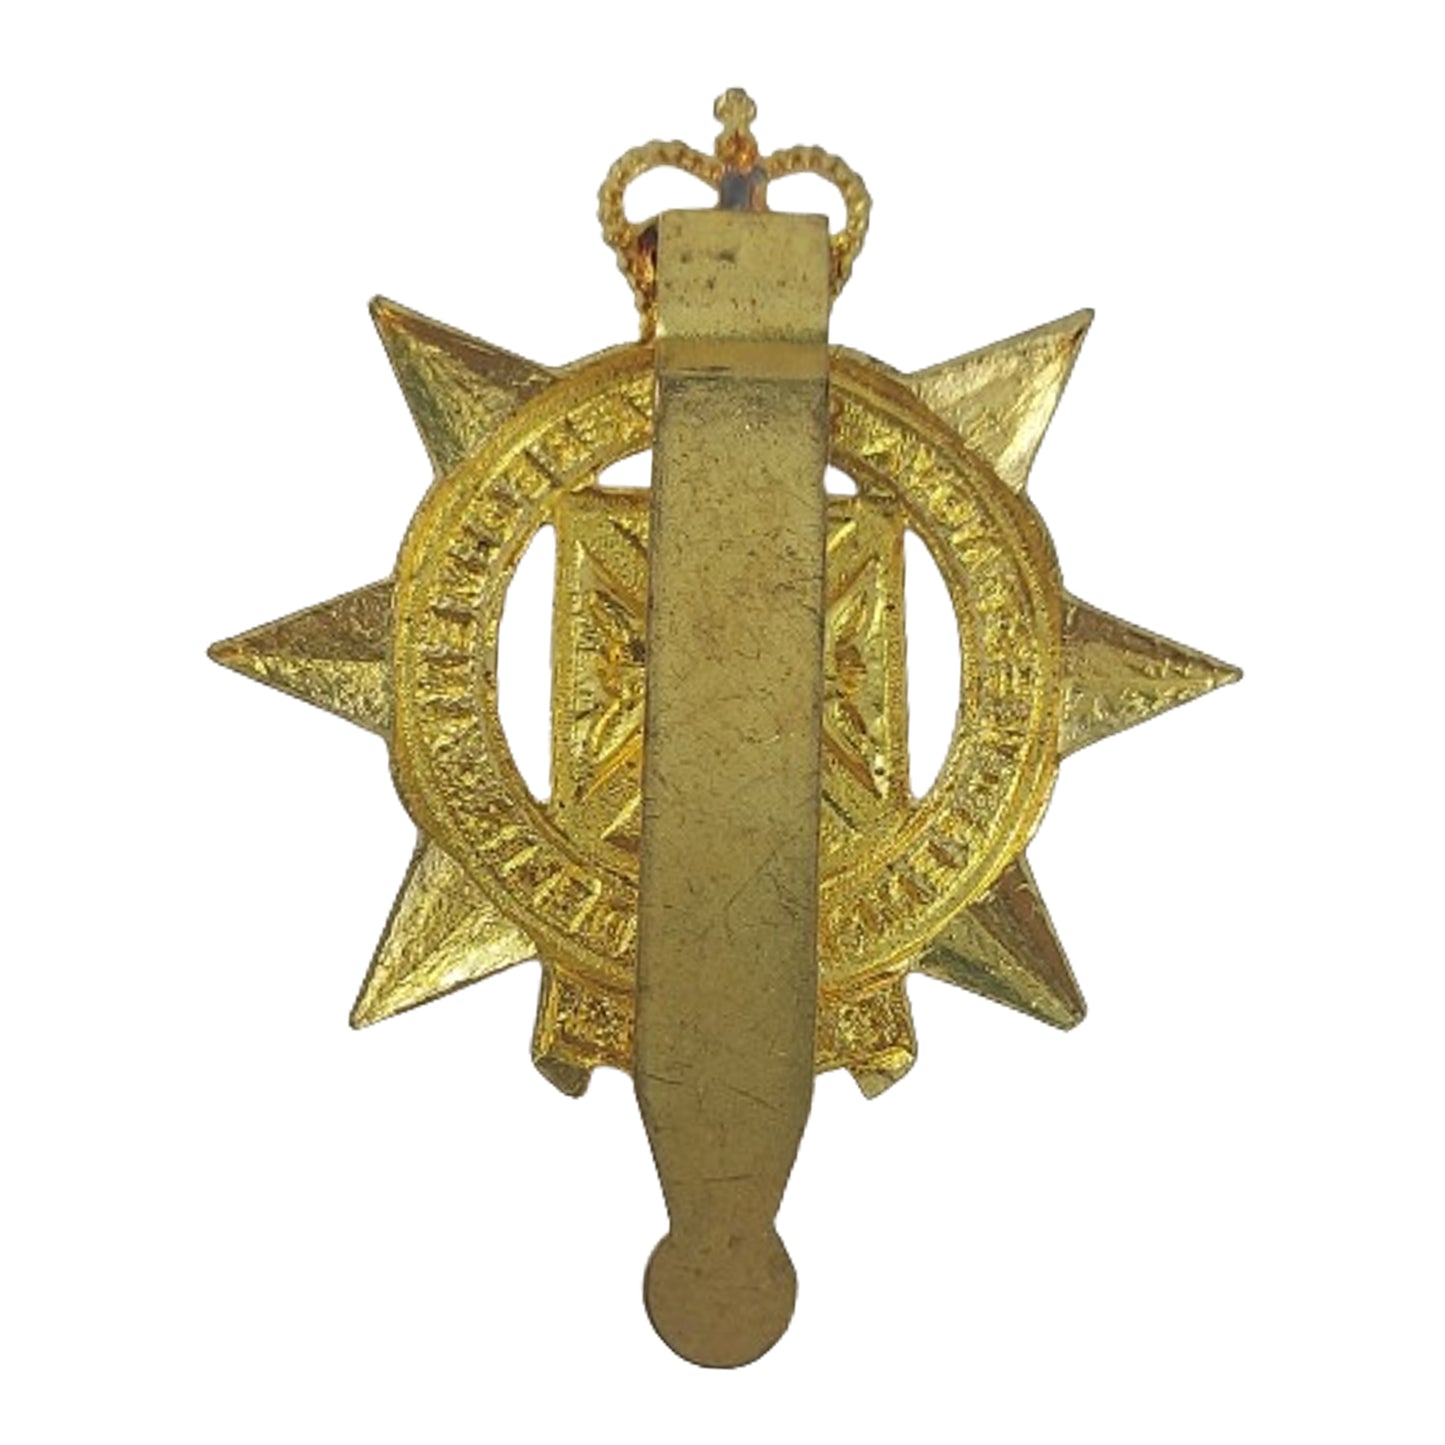 QEII West Nova Scotia Regiment Cap Badge